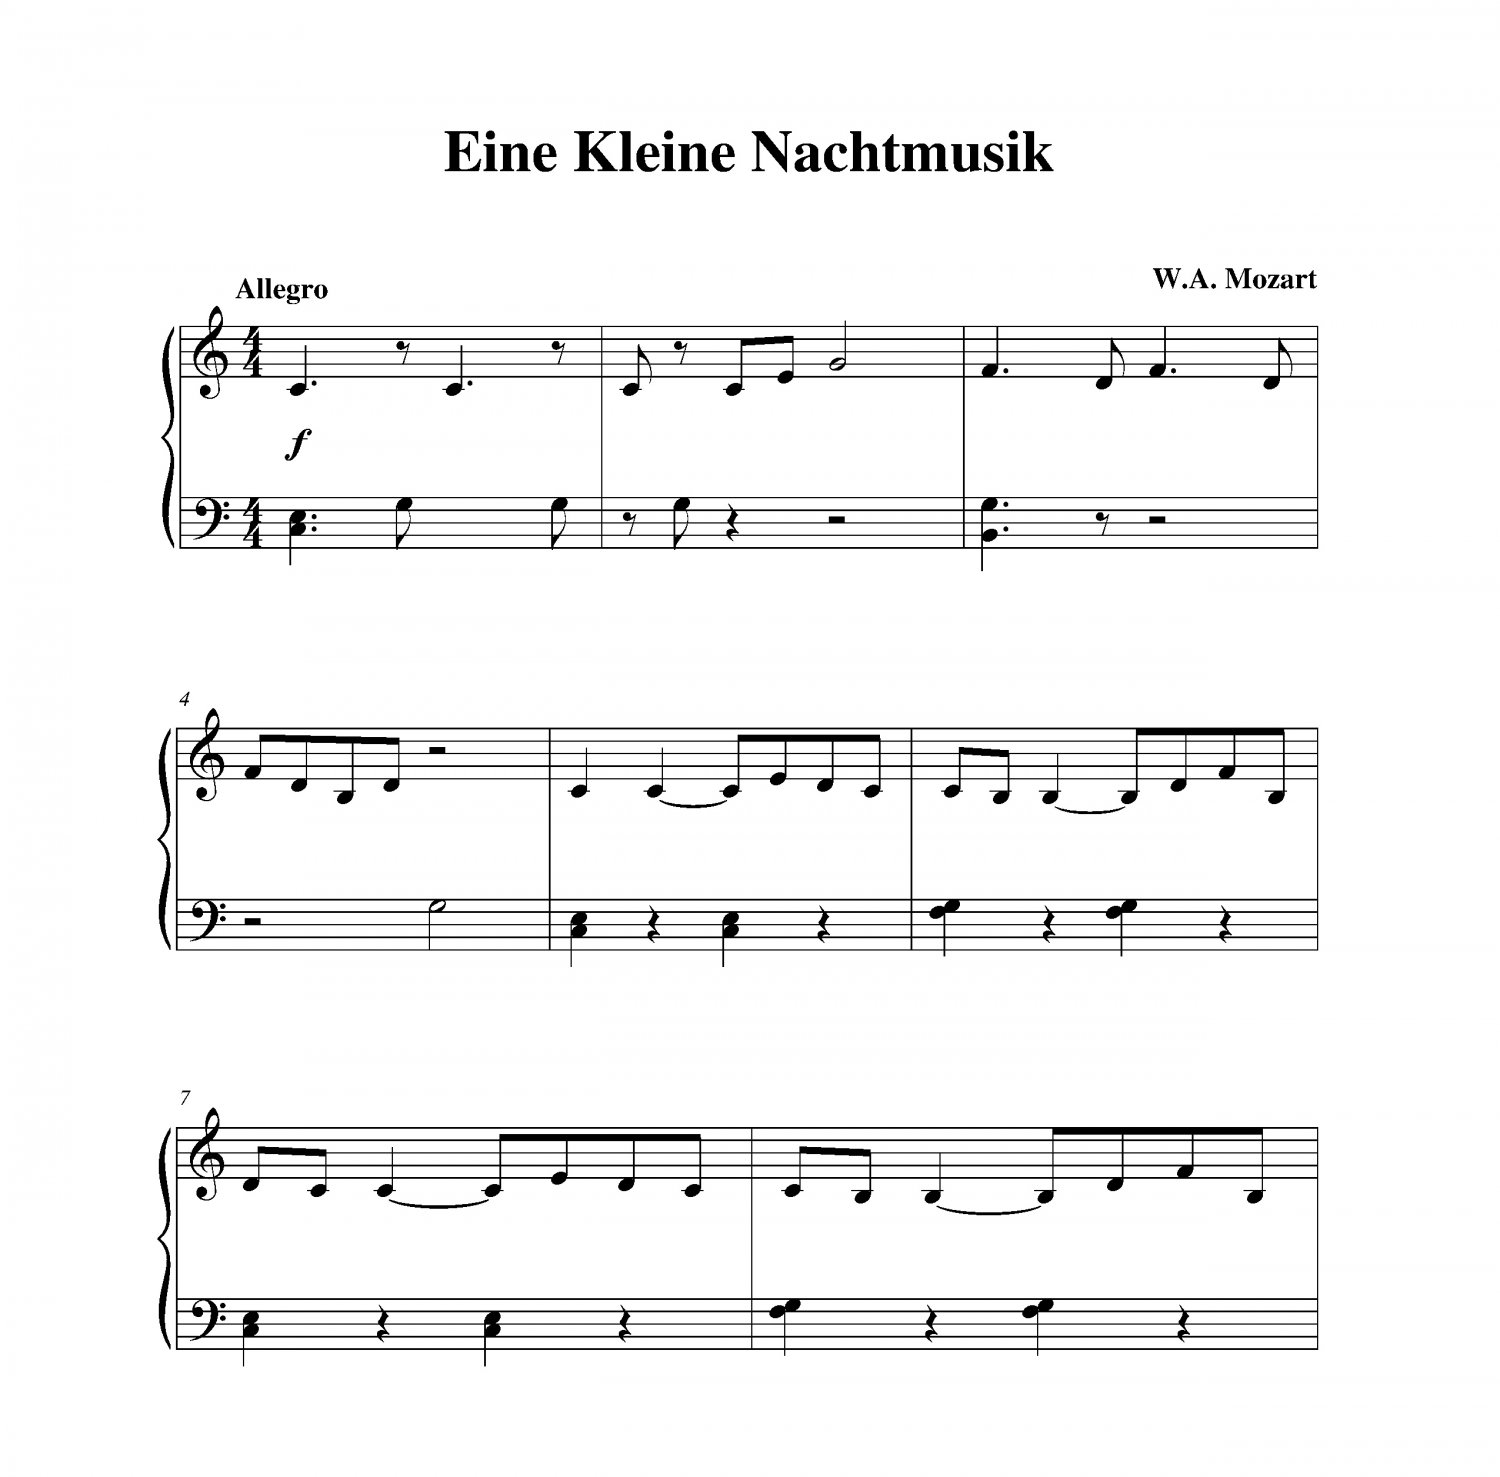 Mozart - Themes from "Eine Kleine Nachtmusik" piano sheet music L...